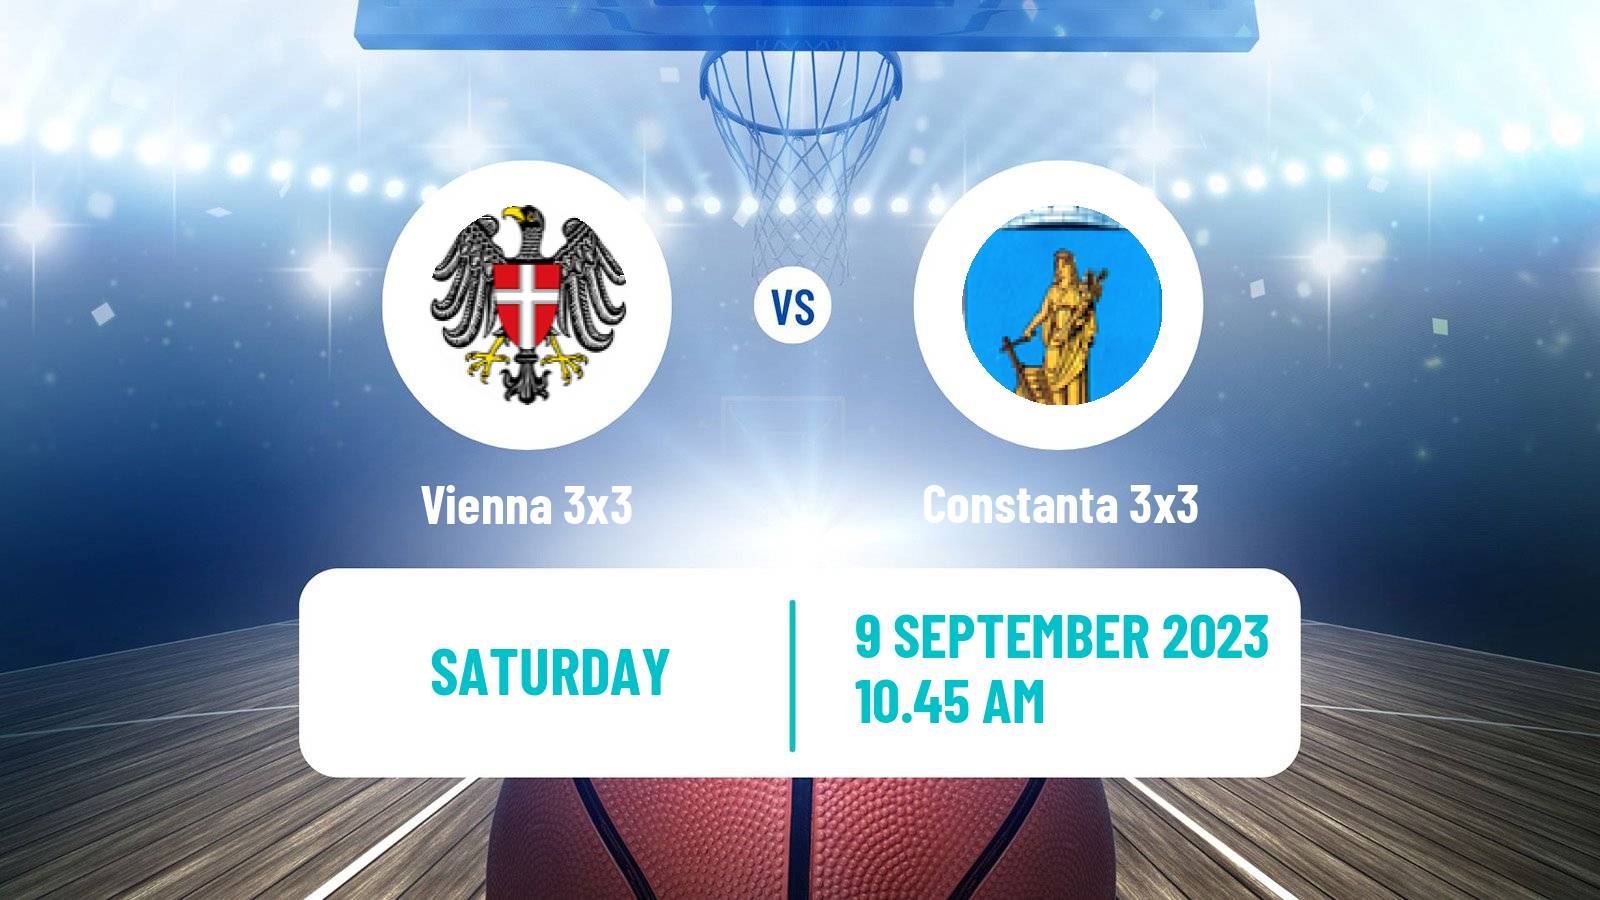 Basketball World Tour Constanta 3x3 Vienna 3x3 - Constanta 3x3